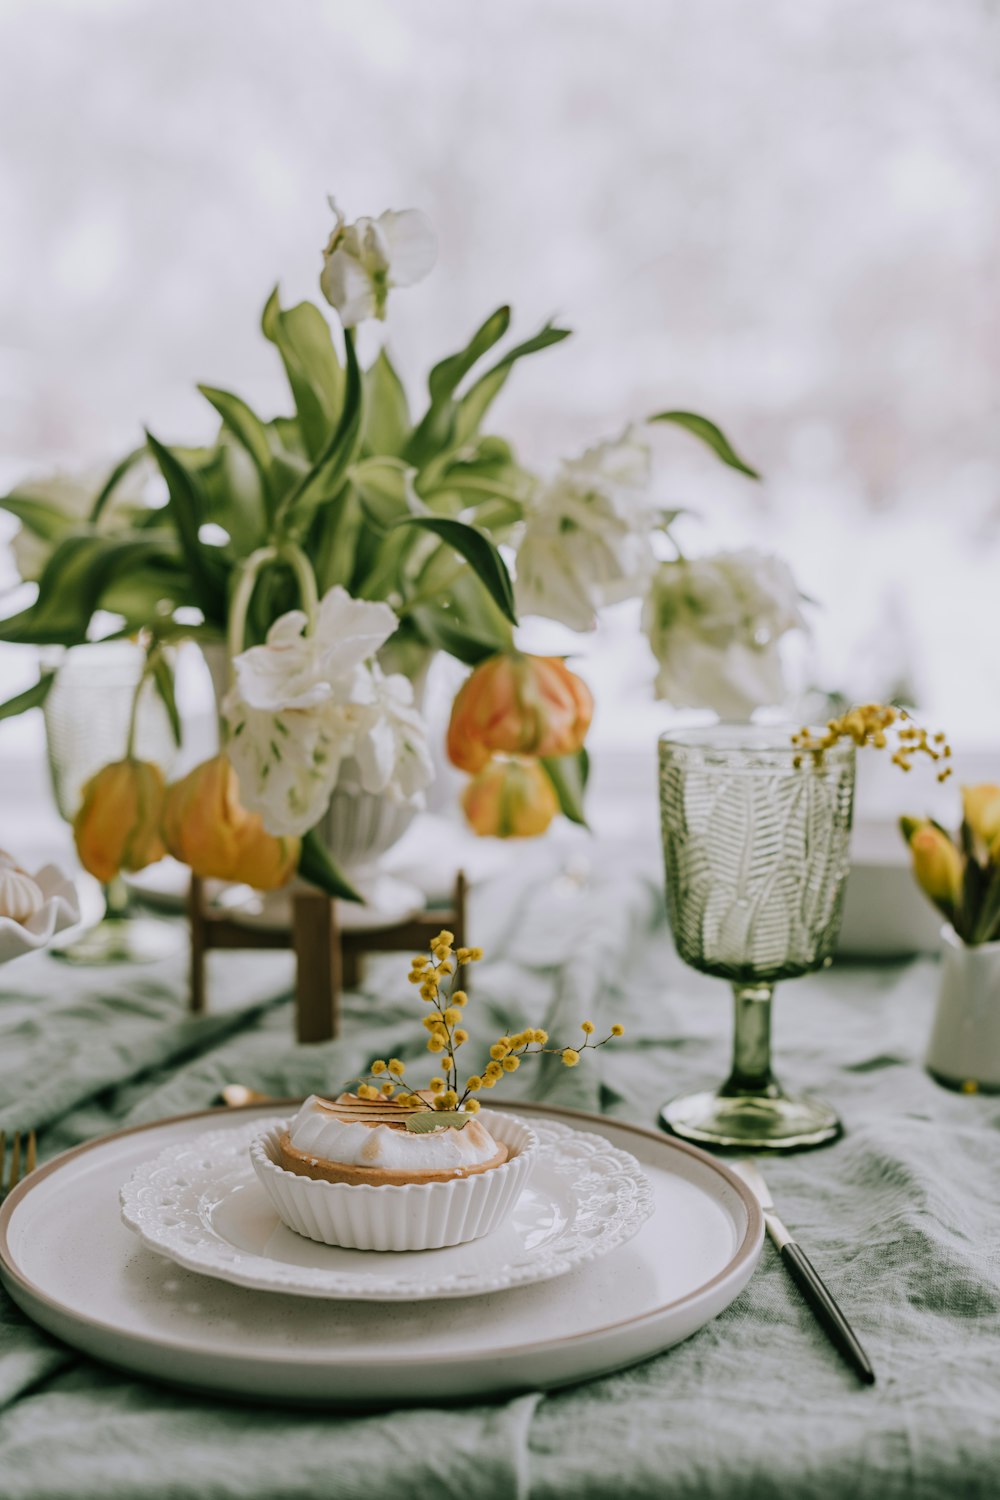 Une assiette blanche surmontée d'un cupcake à côté d'un vase de fleurs  photo – Photo Aliments Gratuite sur Unsplash